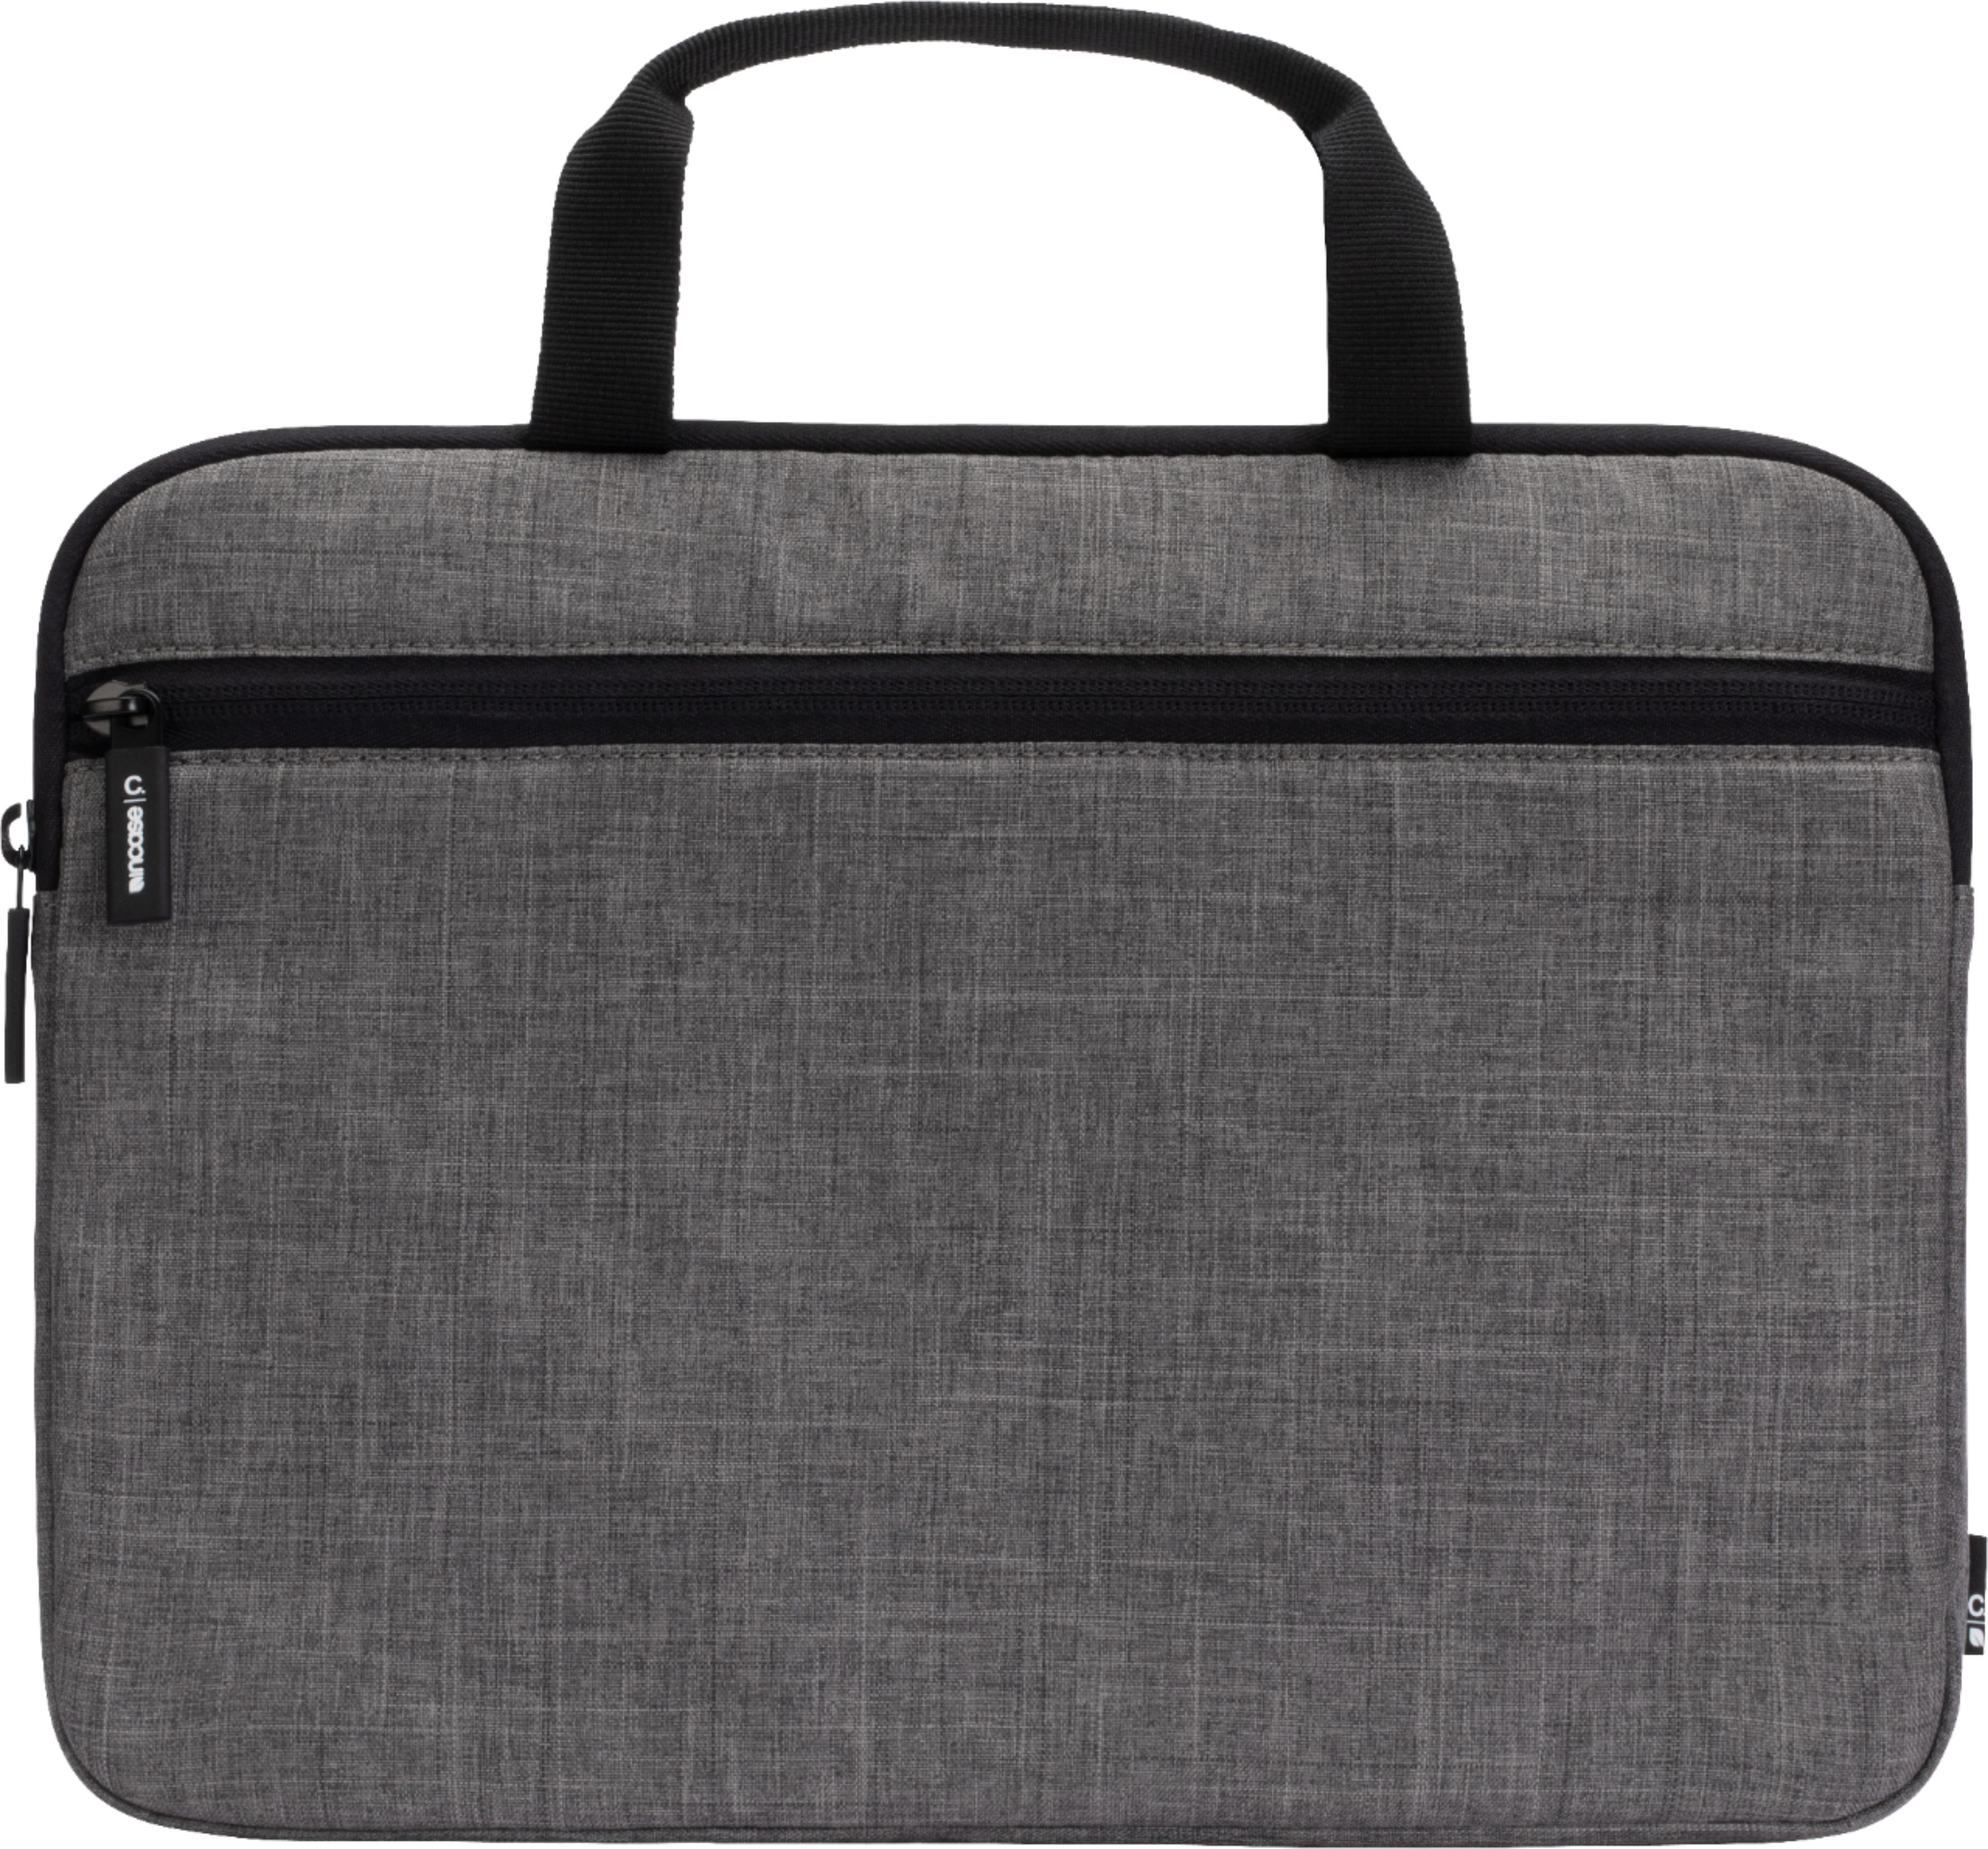 Laptop Shoulder Bag 13 Inch Blah Blah Blah Blah Briefcase Protective Bag 